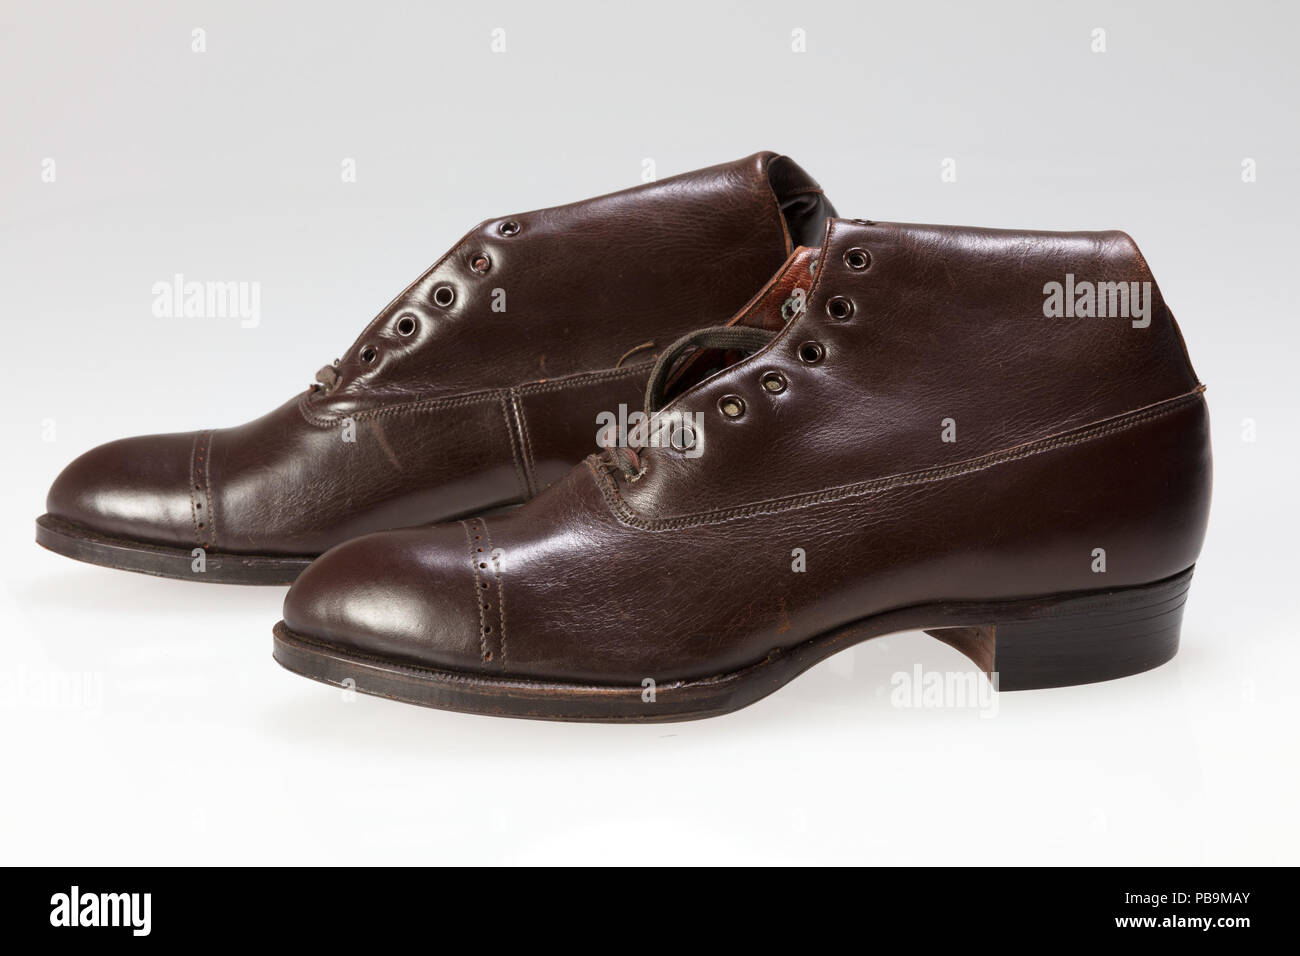 Englisch: Mahagoni Peters's Schuh Unternehmen Black Diamond Marke Kinder  Seite polnische Sport Style high Top lace-up Schuhe mit Originalverpackung.  Zwischen 1900 und 1922, St. Louis entwickelte sich aus einer Distribution  Center